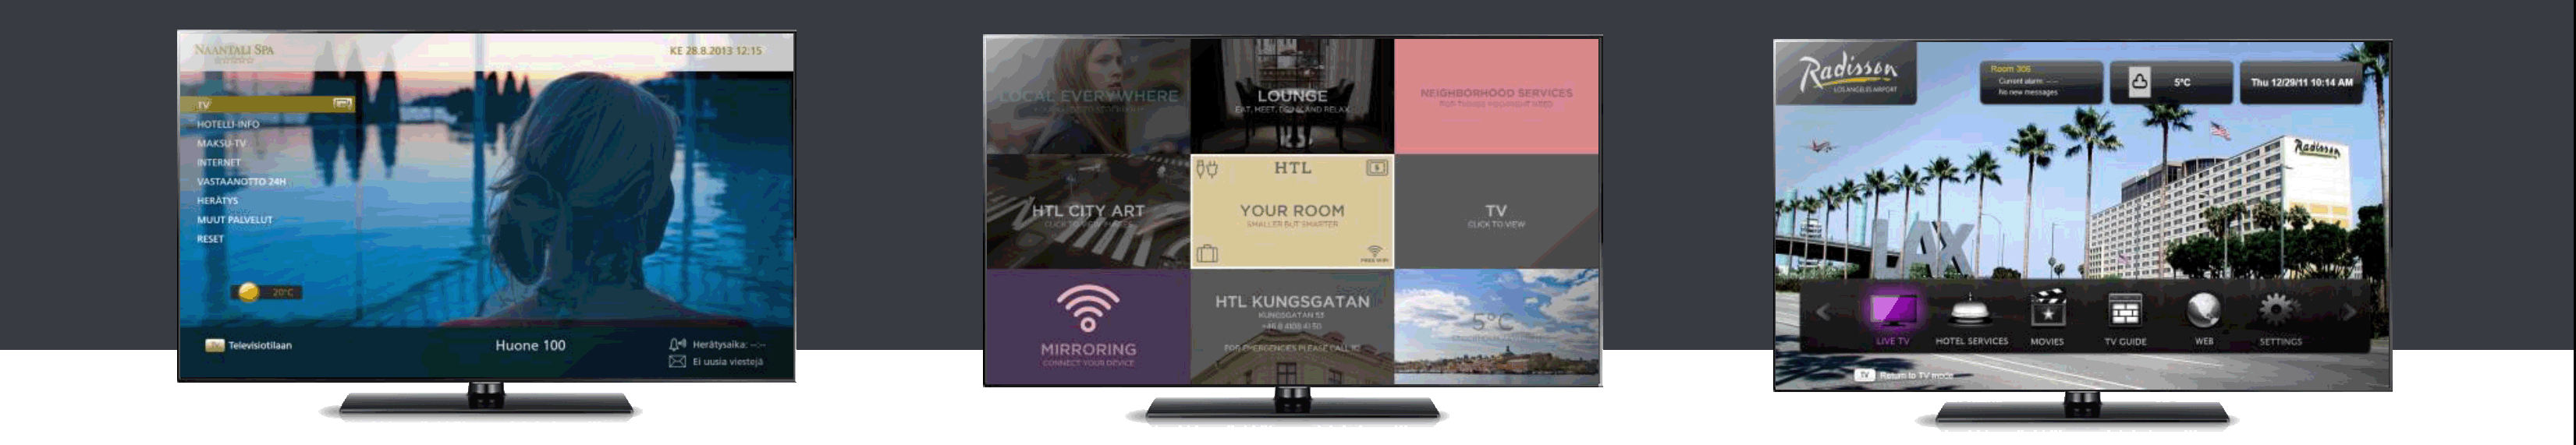 Примеры кастомизации интерфейса пользователя системы интерактивного гостиничного телевидения от Hibox Systems: